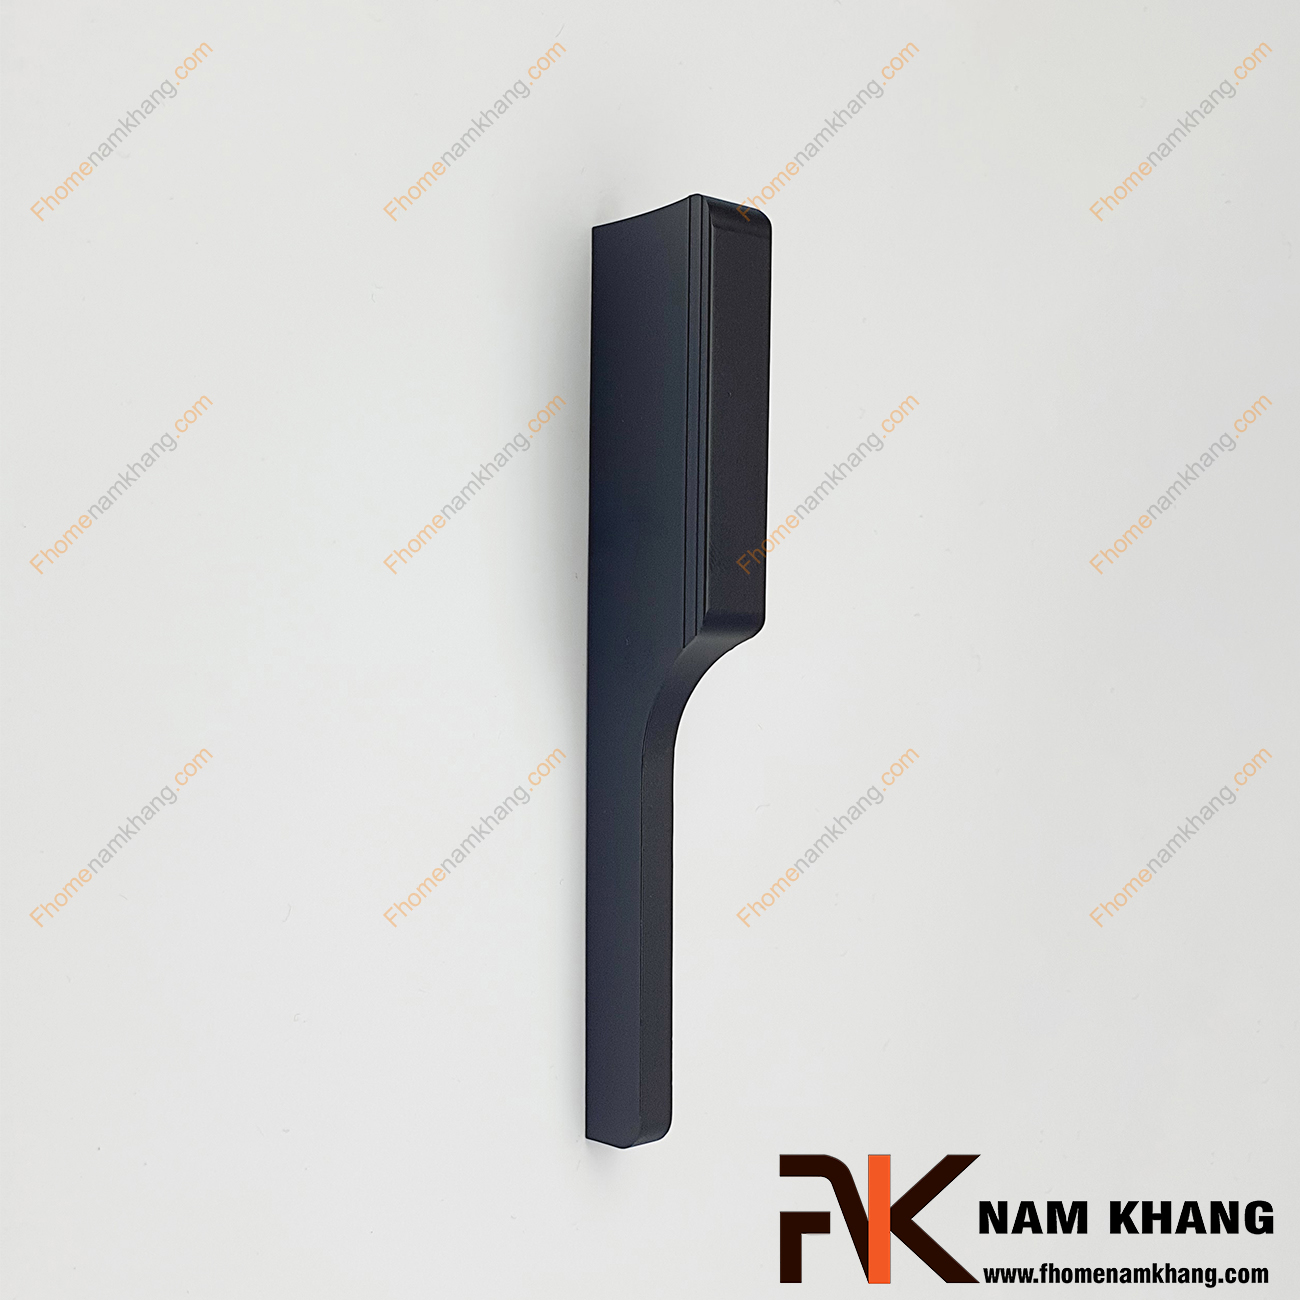 Tay nắm tủ dạng thanh màu đen mờ NK235MS-96D thường được sử dụng trên nhiều dạng tủ kệ, đặc biệt là các dạng tủ bếp và tủ quần áo